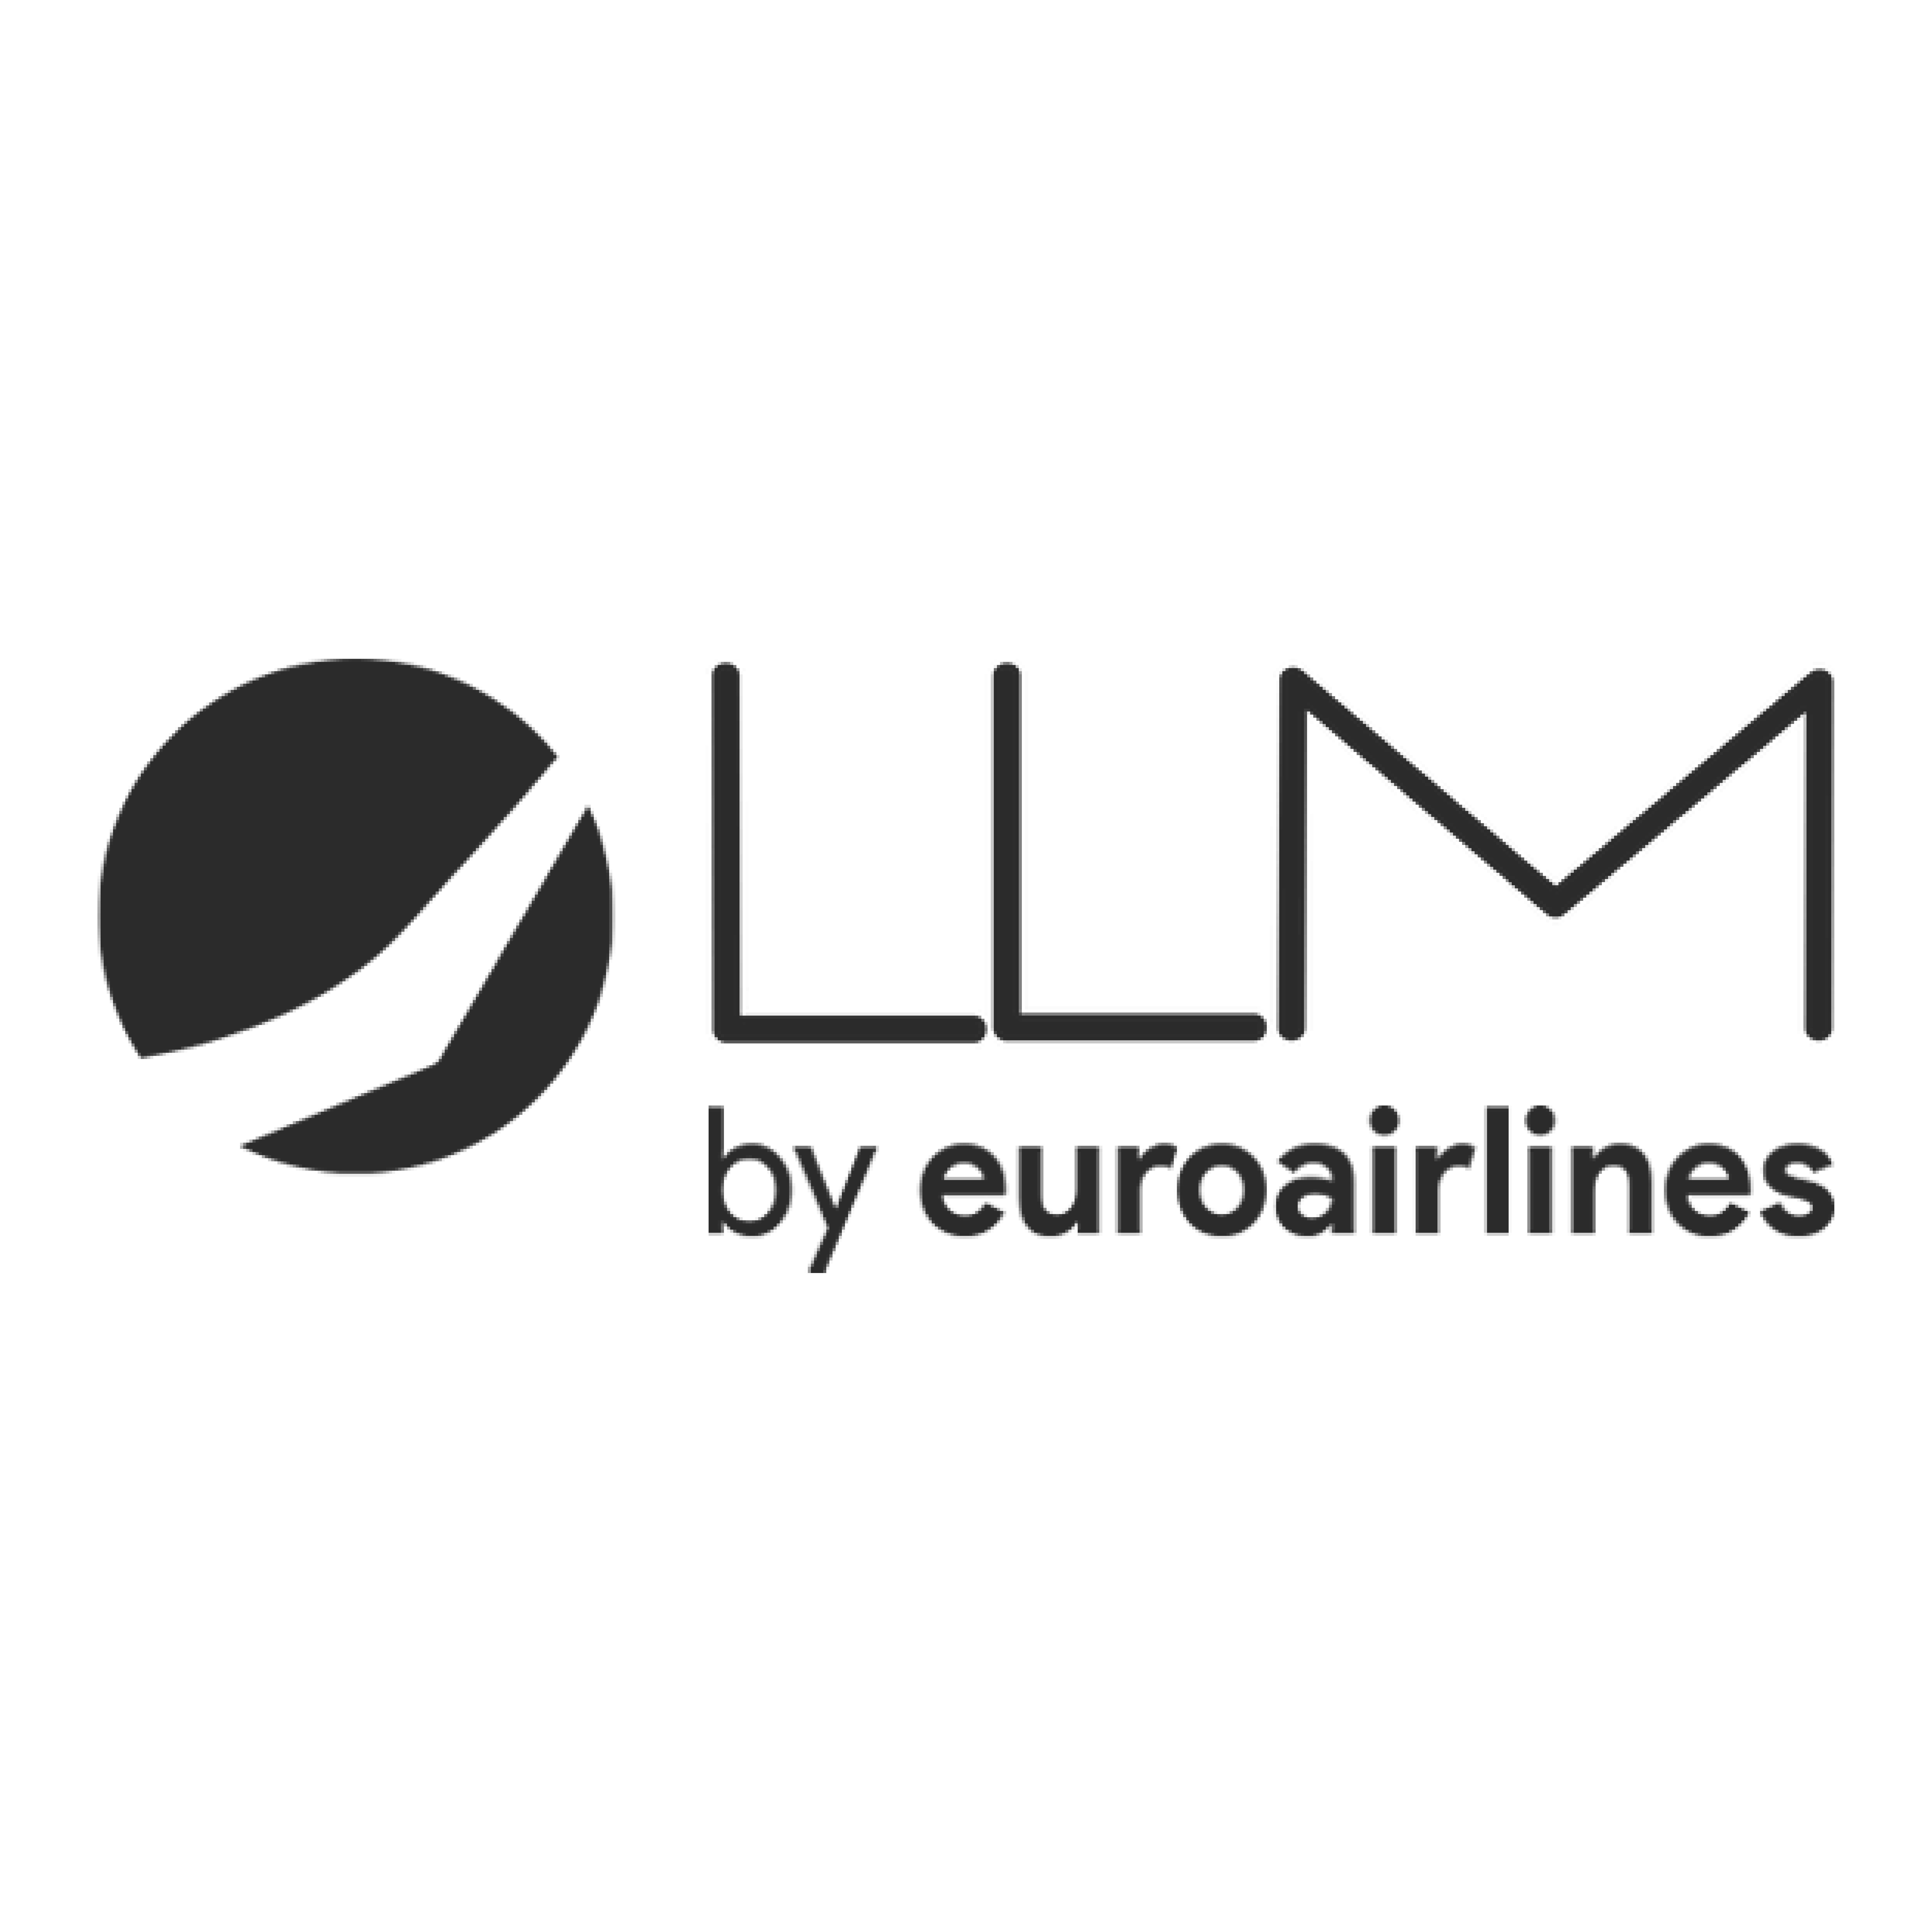 Logo LLM Aviation